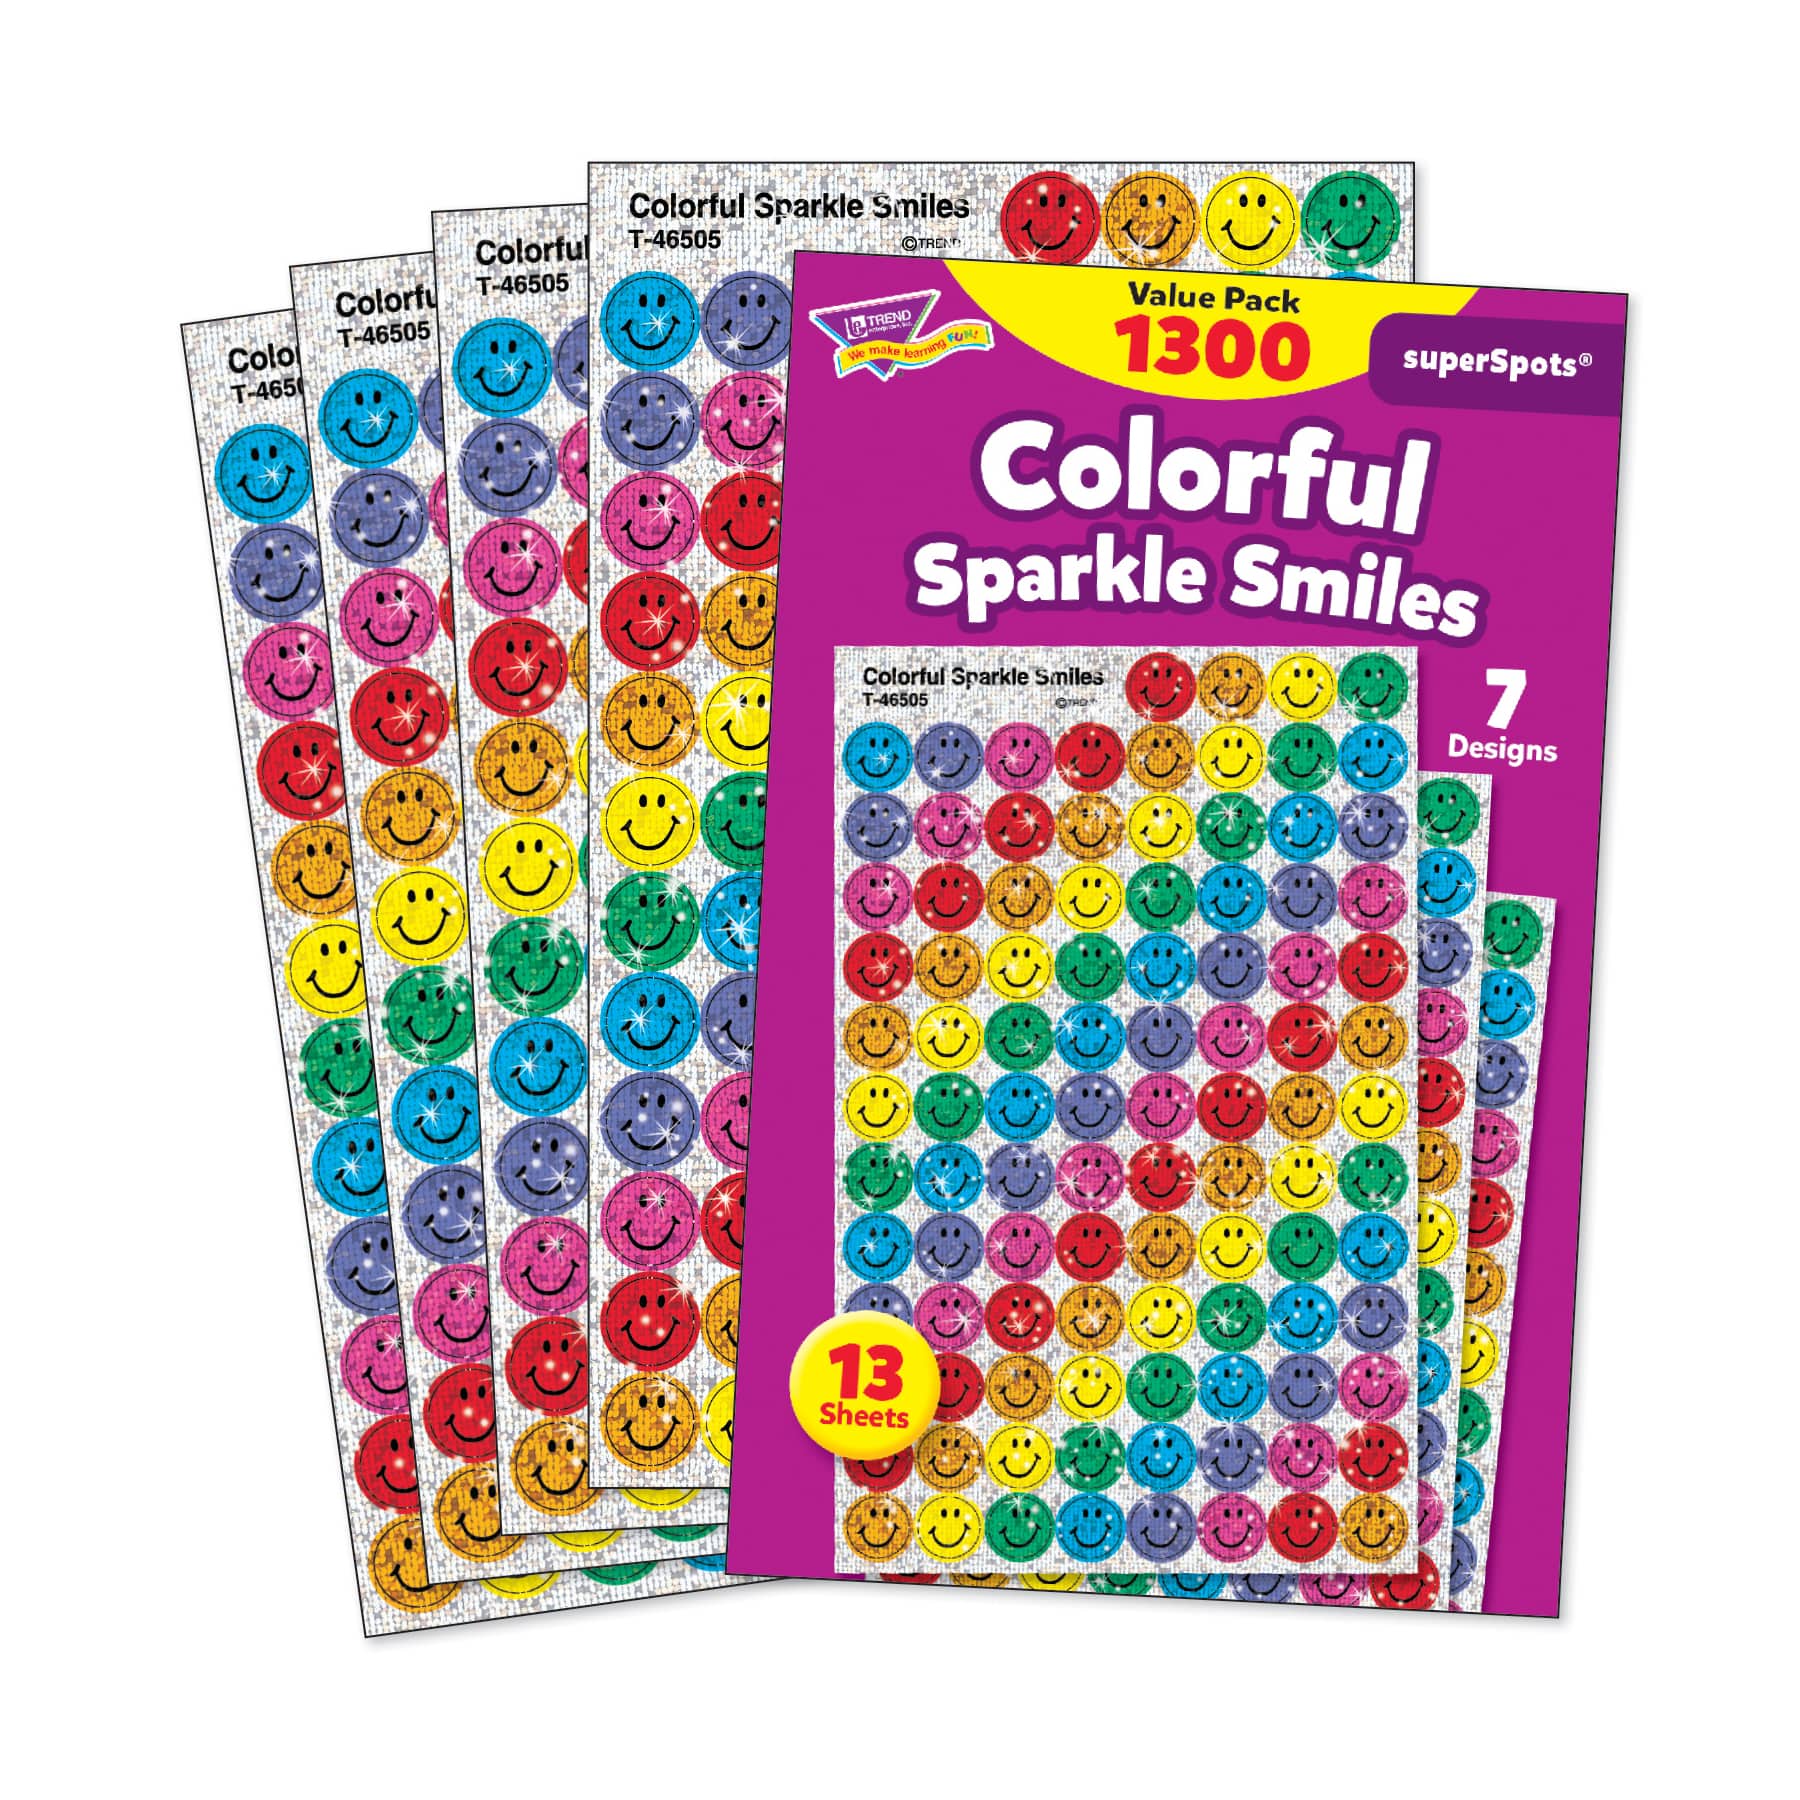 Trend Enterprises&#xAE; superSpots&#xAE; Multicolor Sparkle Smiles, 3 Pack Bundle